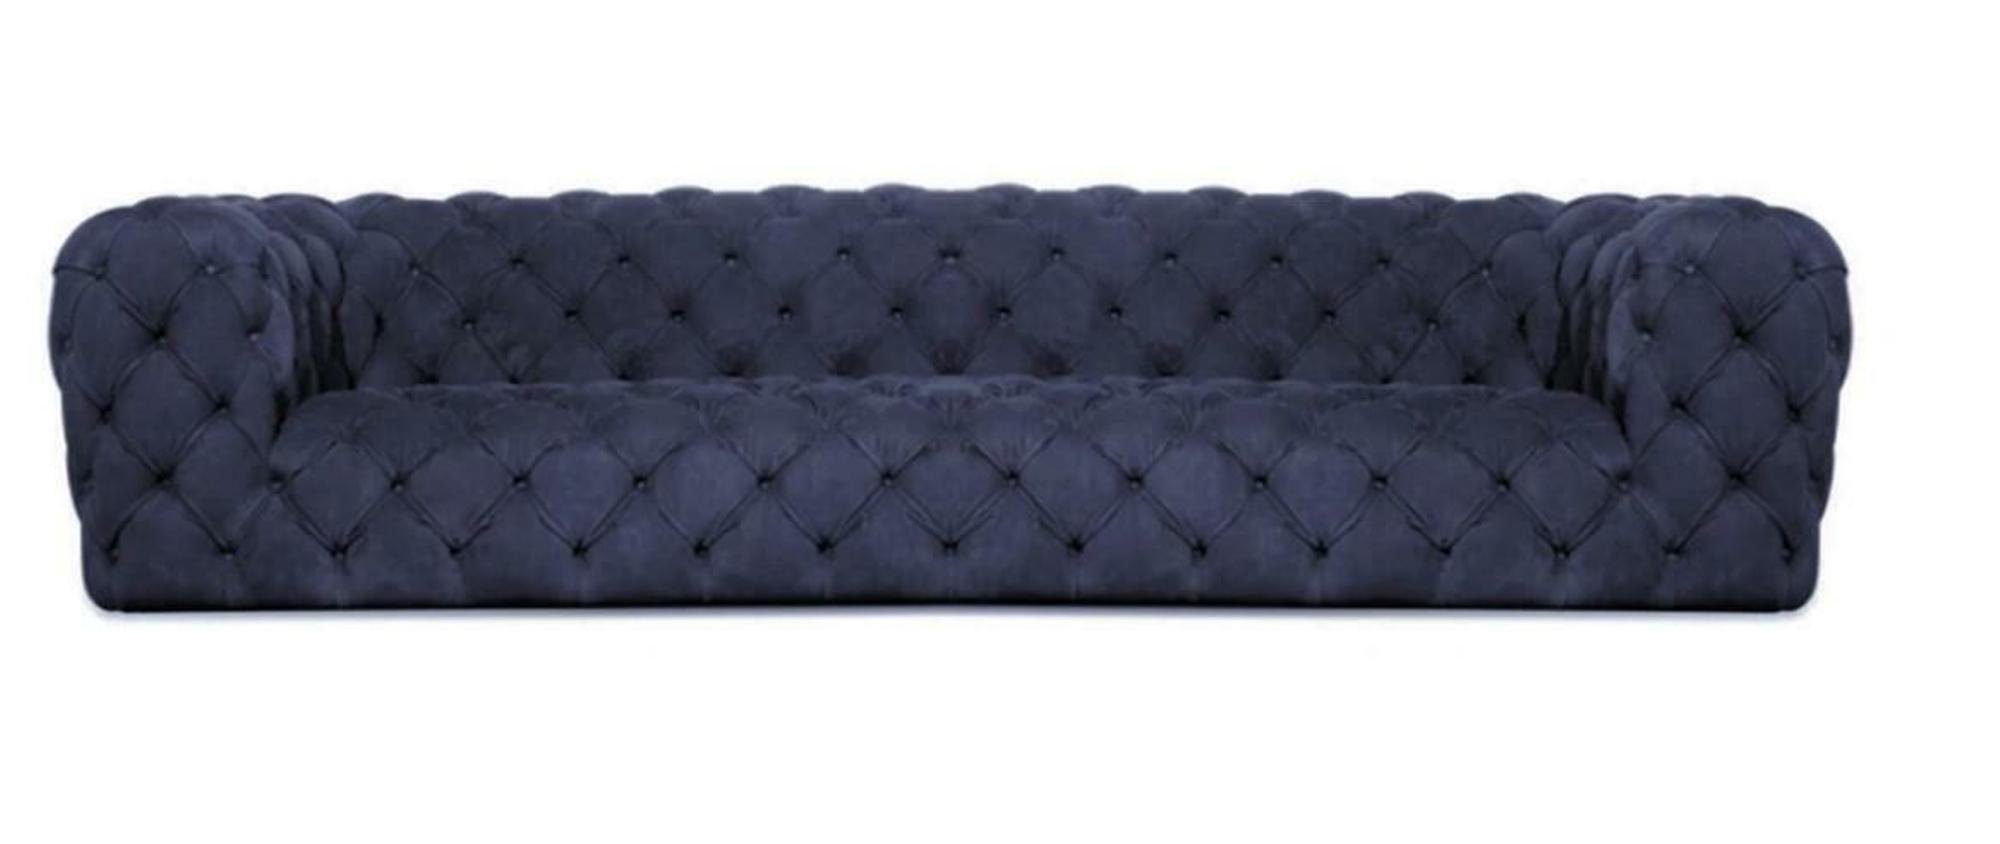 JVmoebel Chesterfield-Sofa, Grau Chesterfield Wohnzimmer Modern Design Couchen Sofa Möbel Stoff Blau